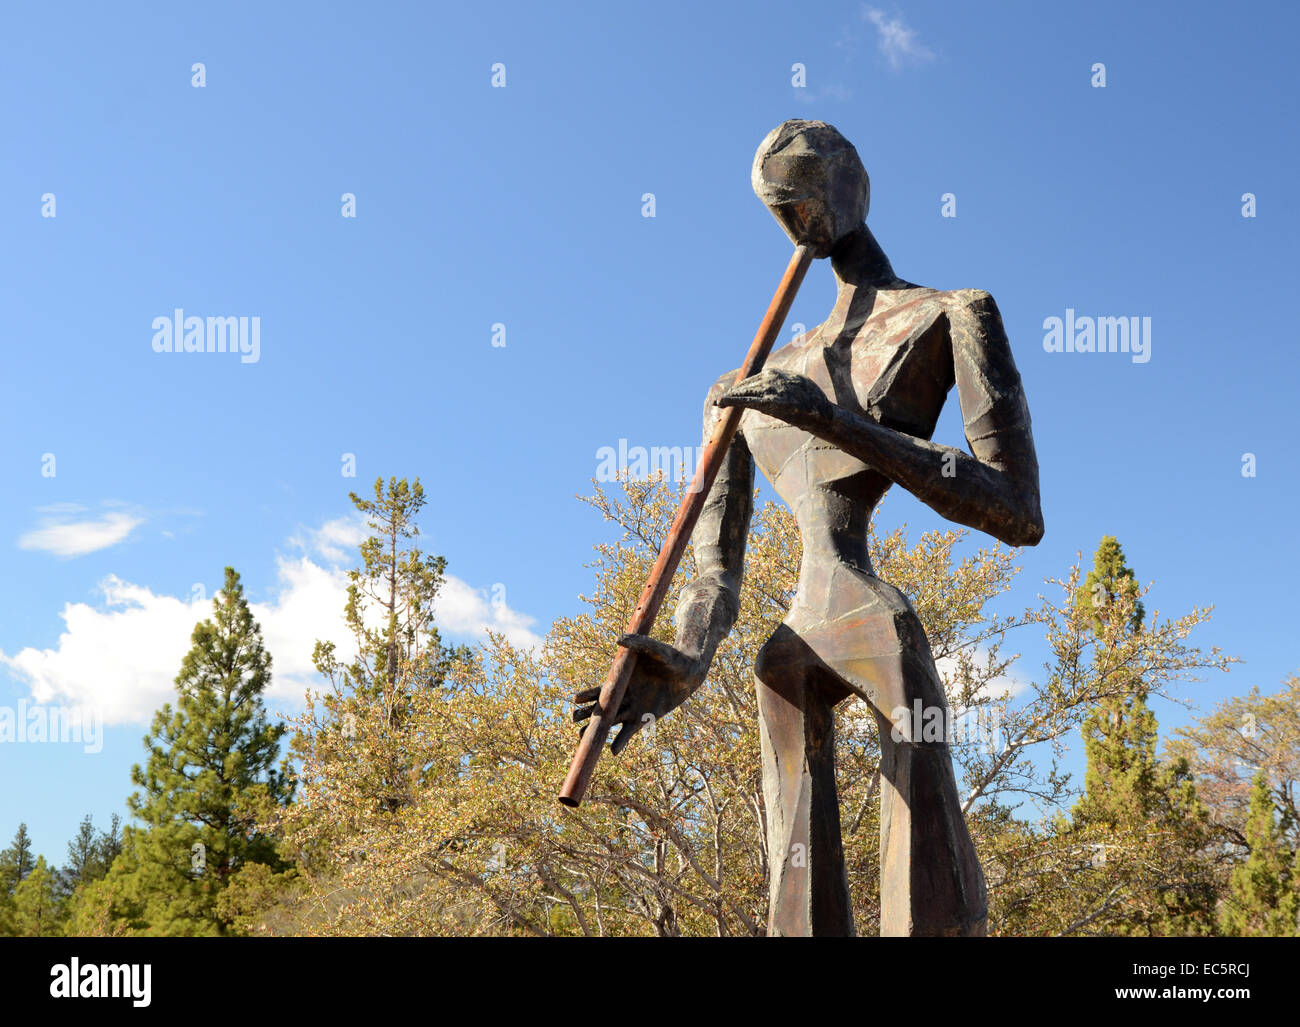 Dennis Smith, sculpture "Le joueur de flûte", mémorial vivant Sculpture Garden, Californie Banque D'Images